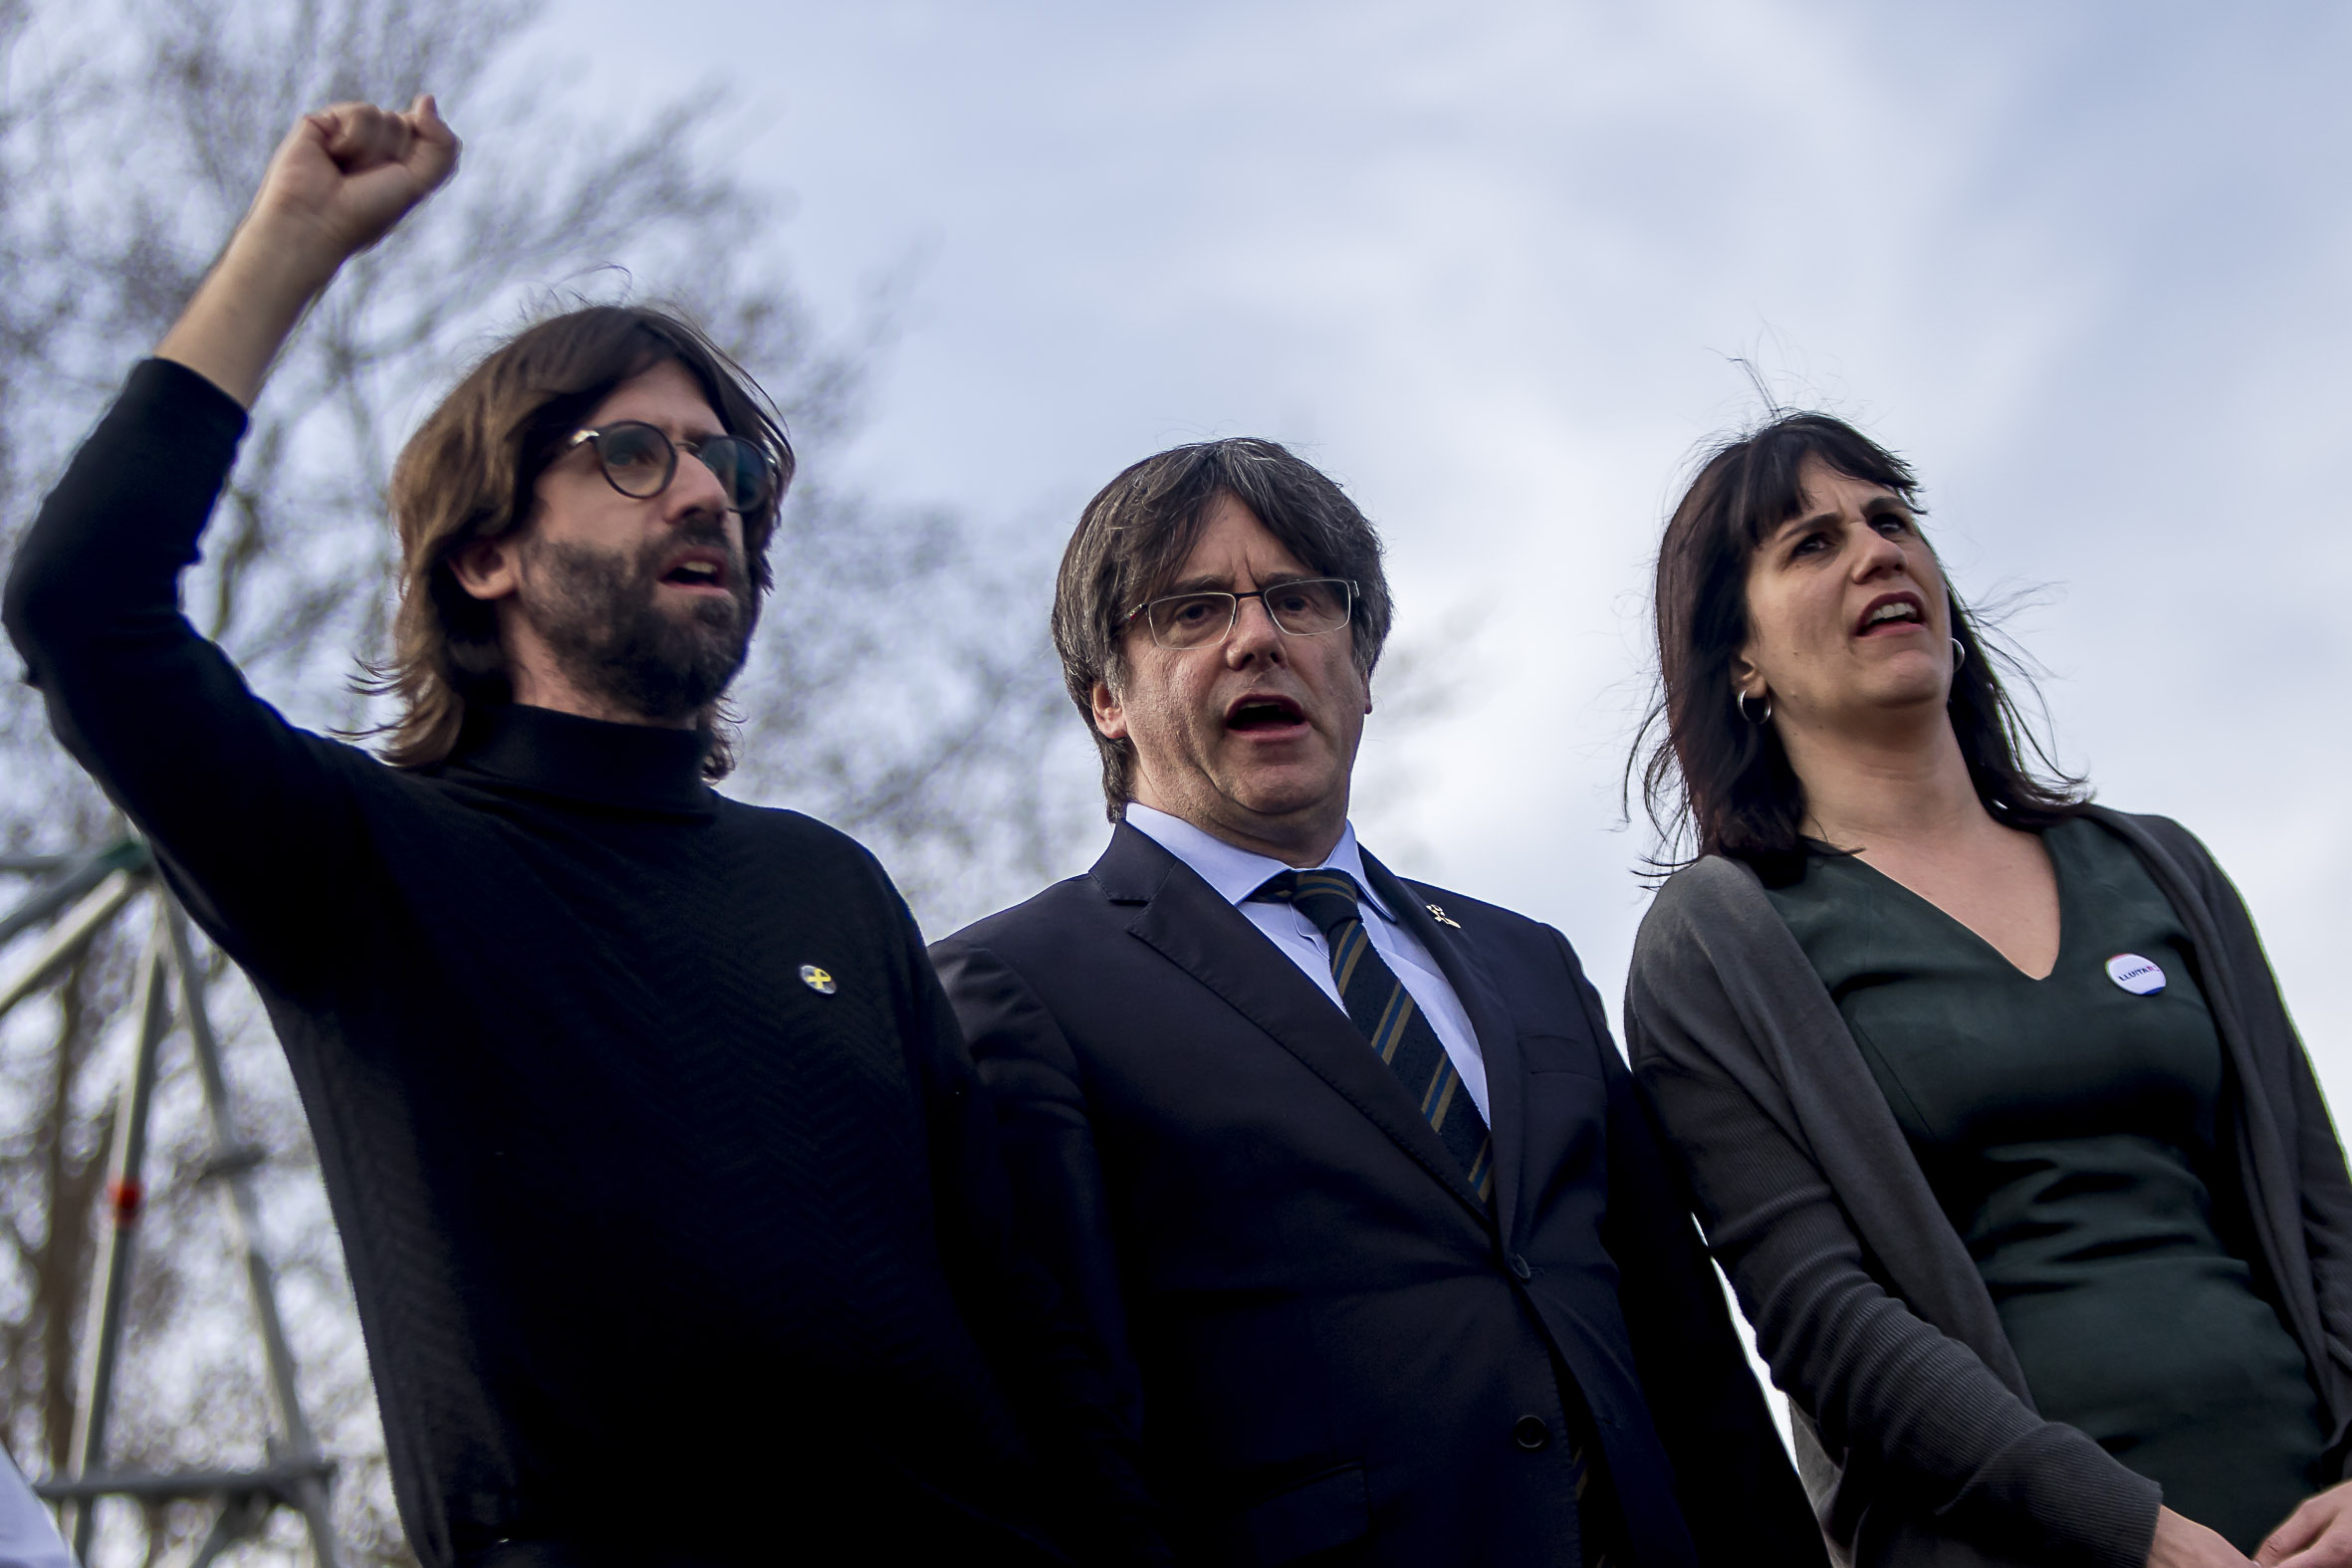 Guillem Fuster, portaveu nacional de Poble Lliure, al costat del president Carles Puigdemont i la diputada de JxCat Aurora Madaula (fotografia: Albert Salamé).